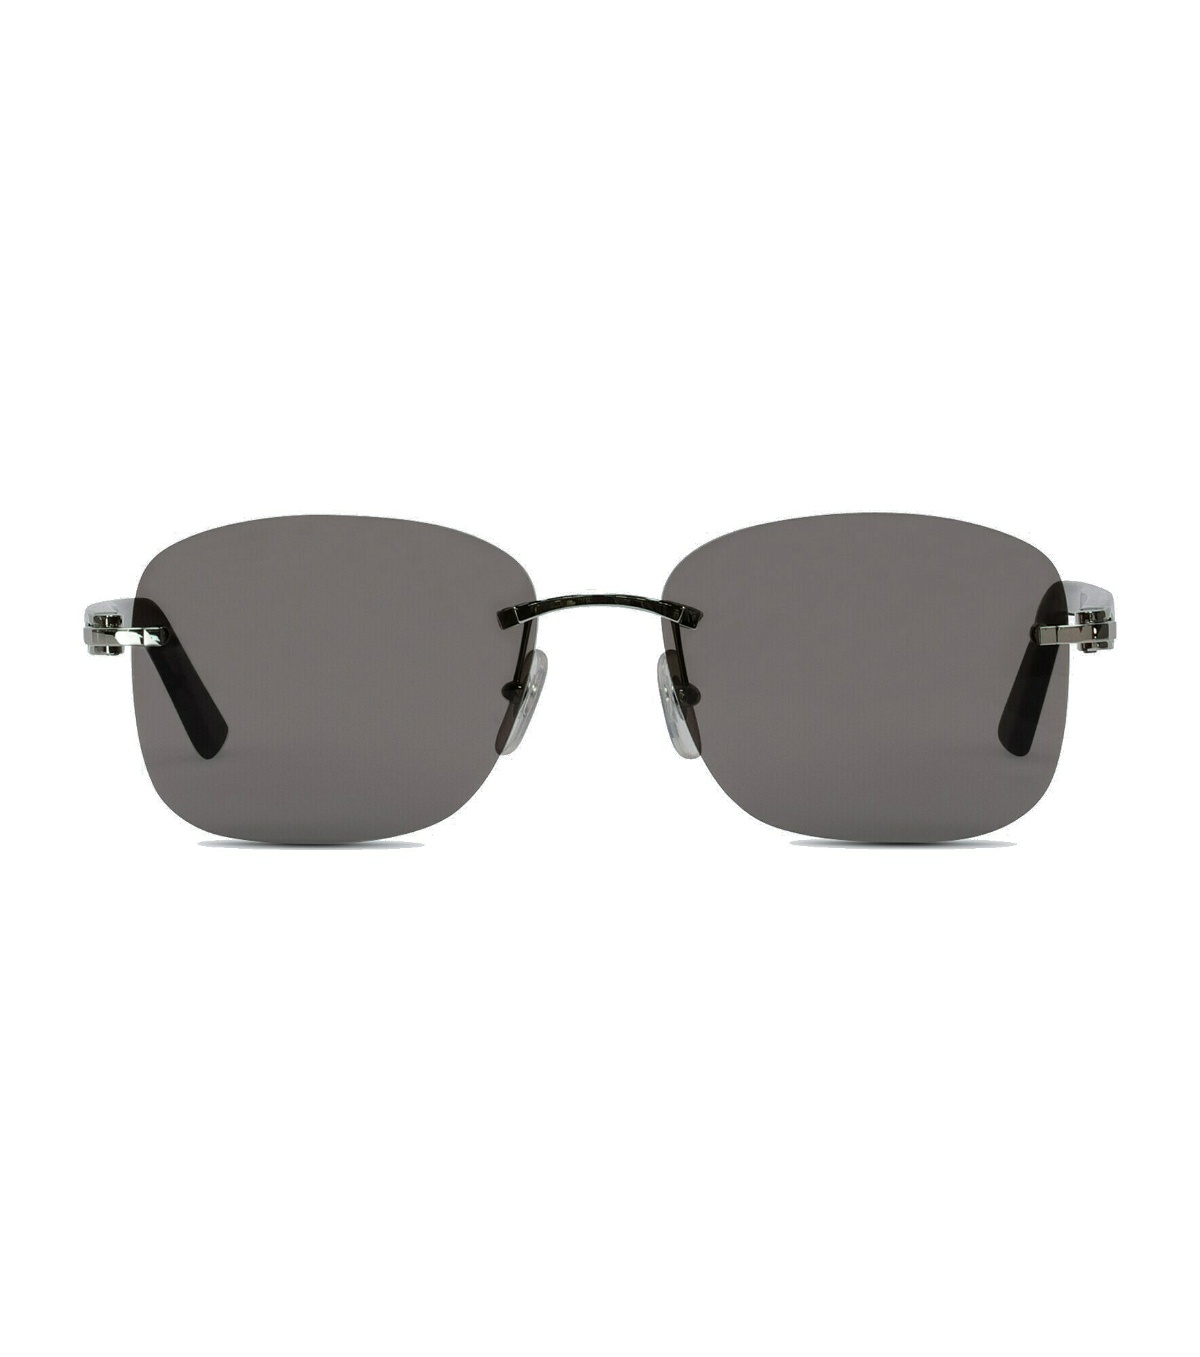 Cartier Eyewear Collection - Frameless sunglasses Cartier